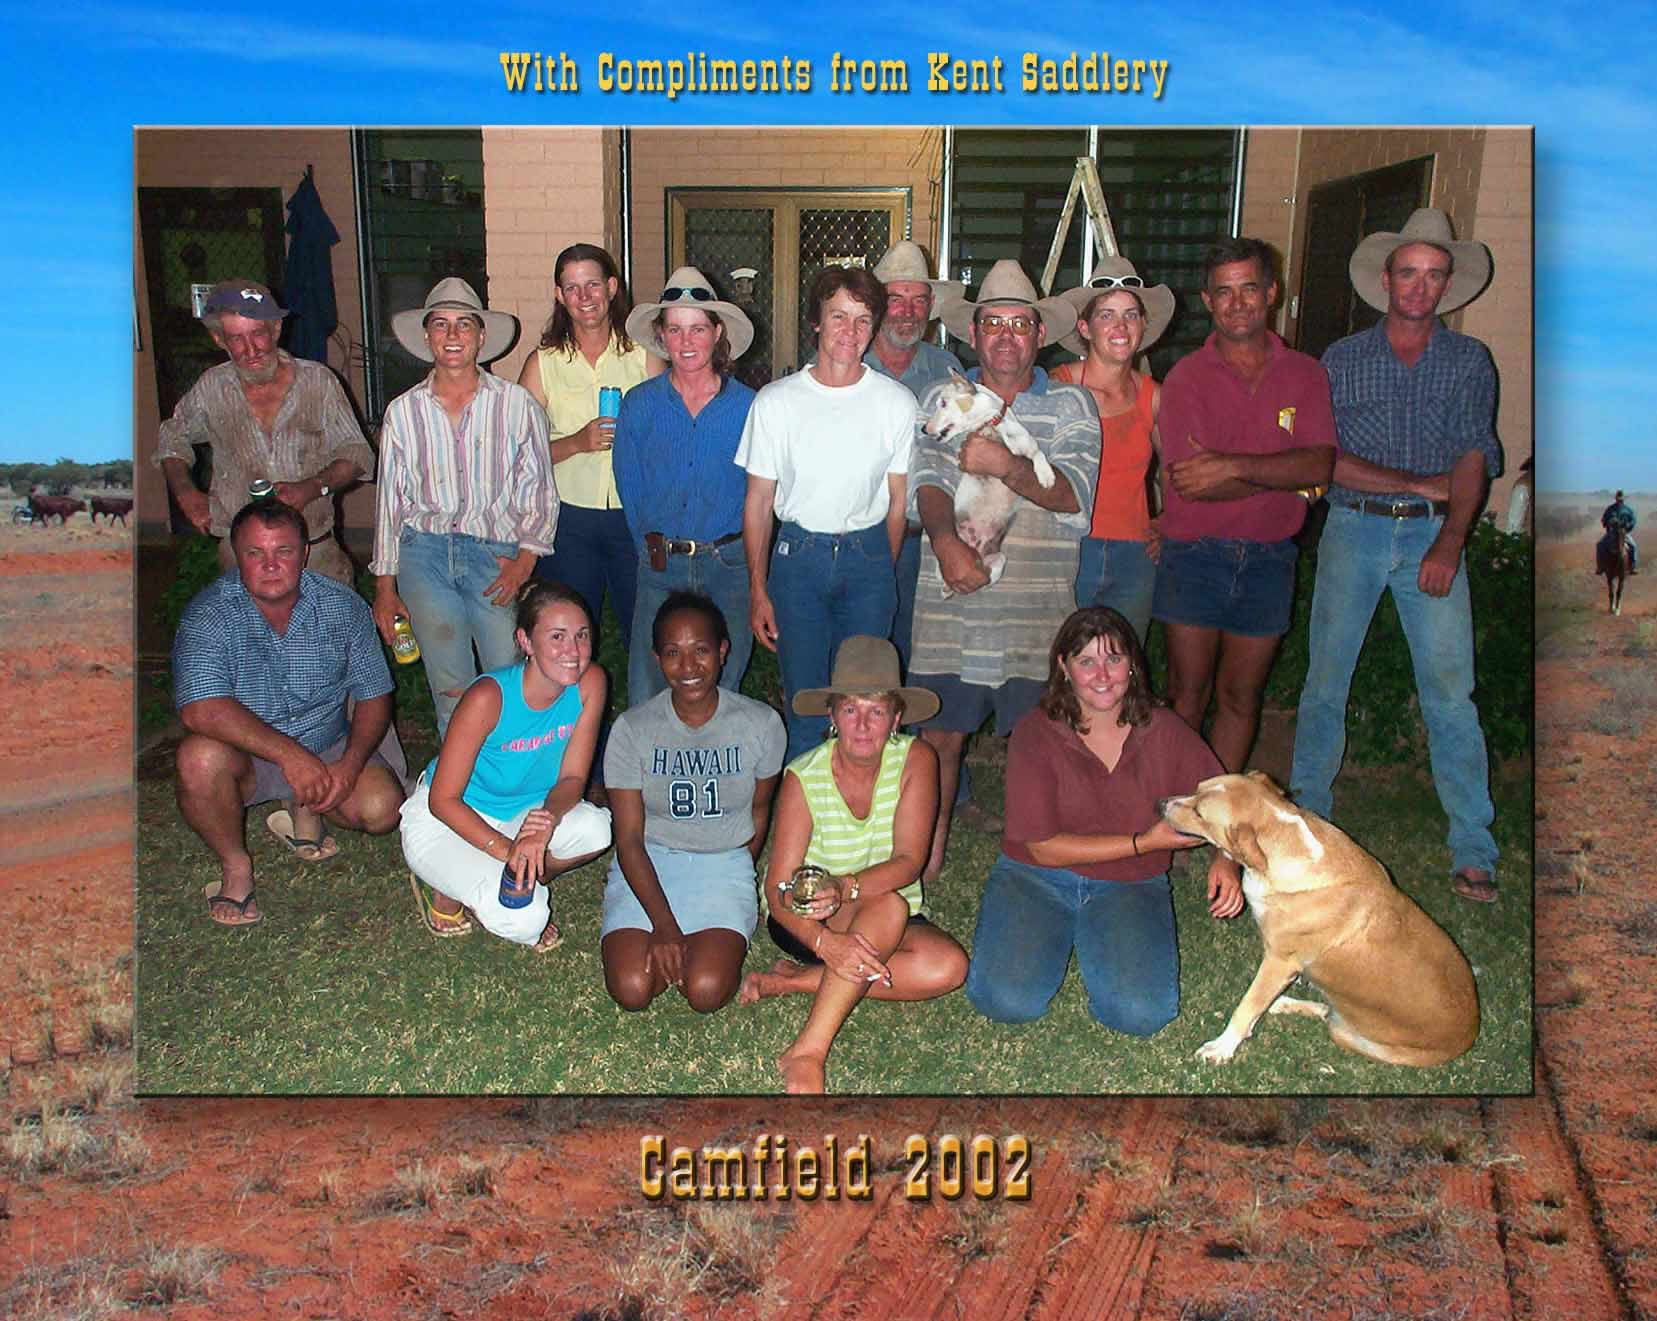 Northern Territory - Camfield 34